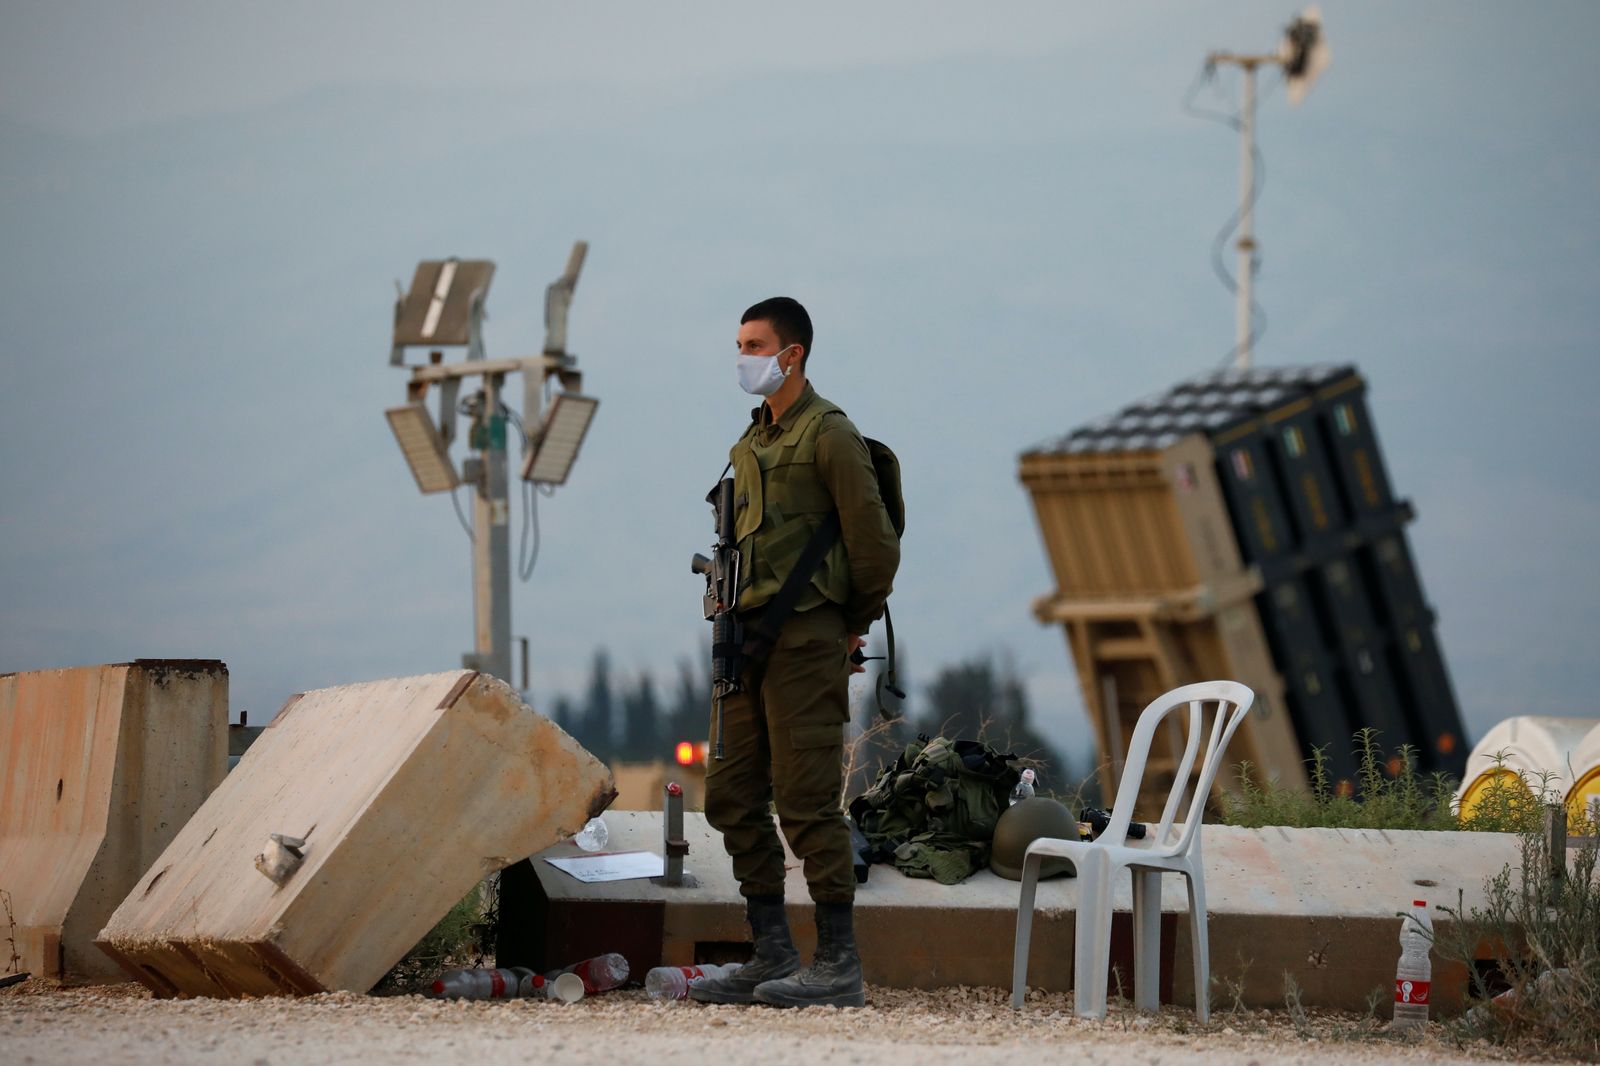 جندي إسرائيلي يقف بالقرب من إحدى بطاريات نظام القبة الحديدية لاعتراض الصواريخ بالقرب من الحدود اللبنانية 27 يوليو 2020 - REUTERS